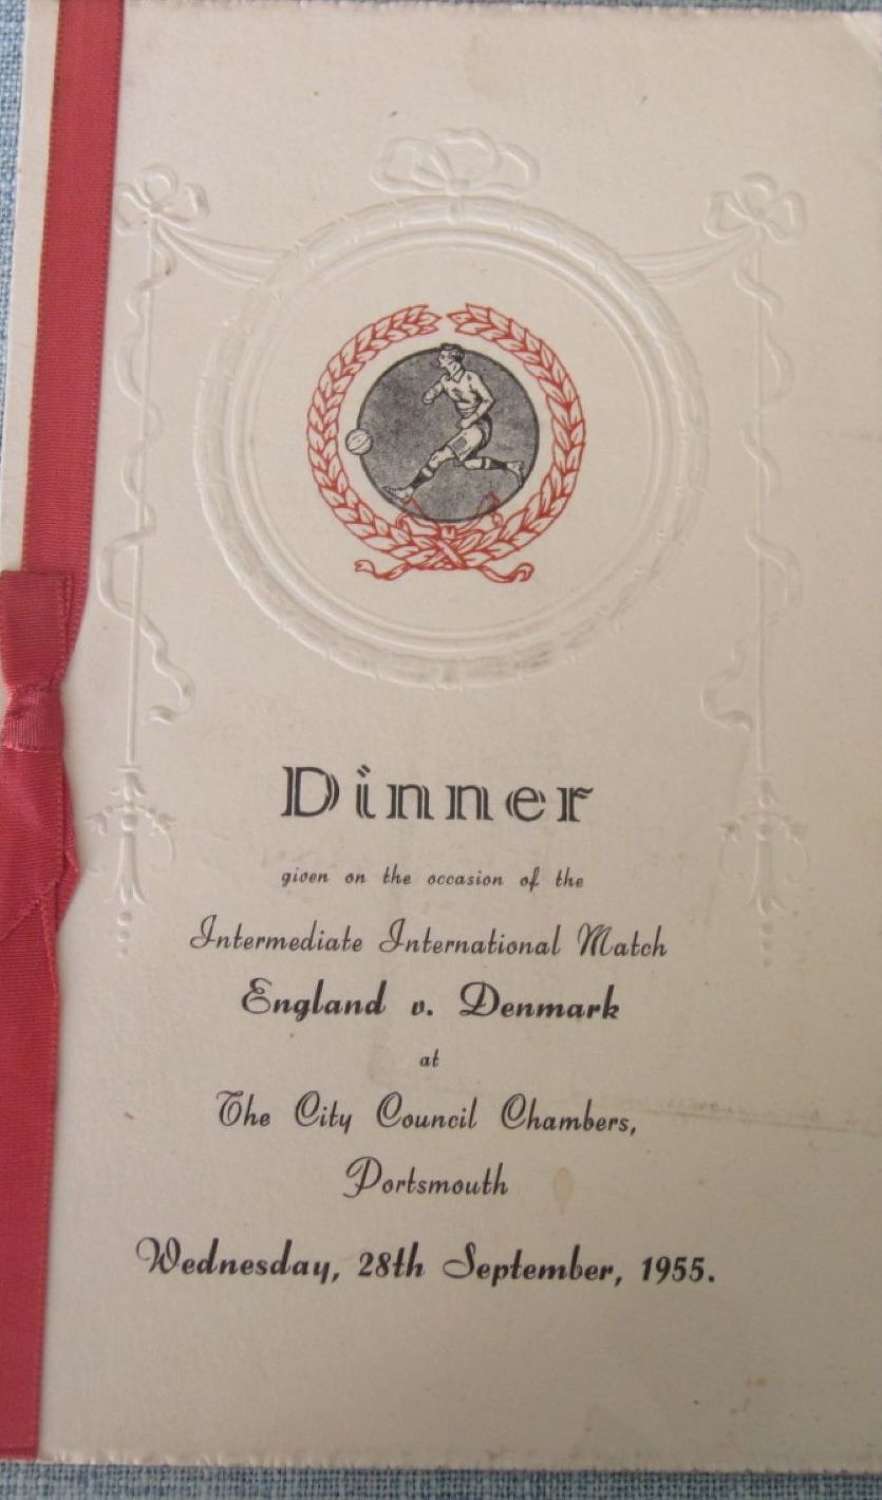 England v Denmark under23 signed menu 1955 at Portsmouth